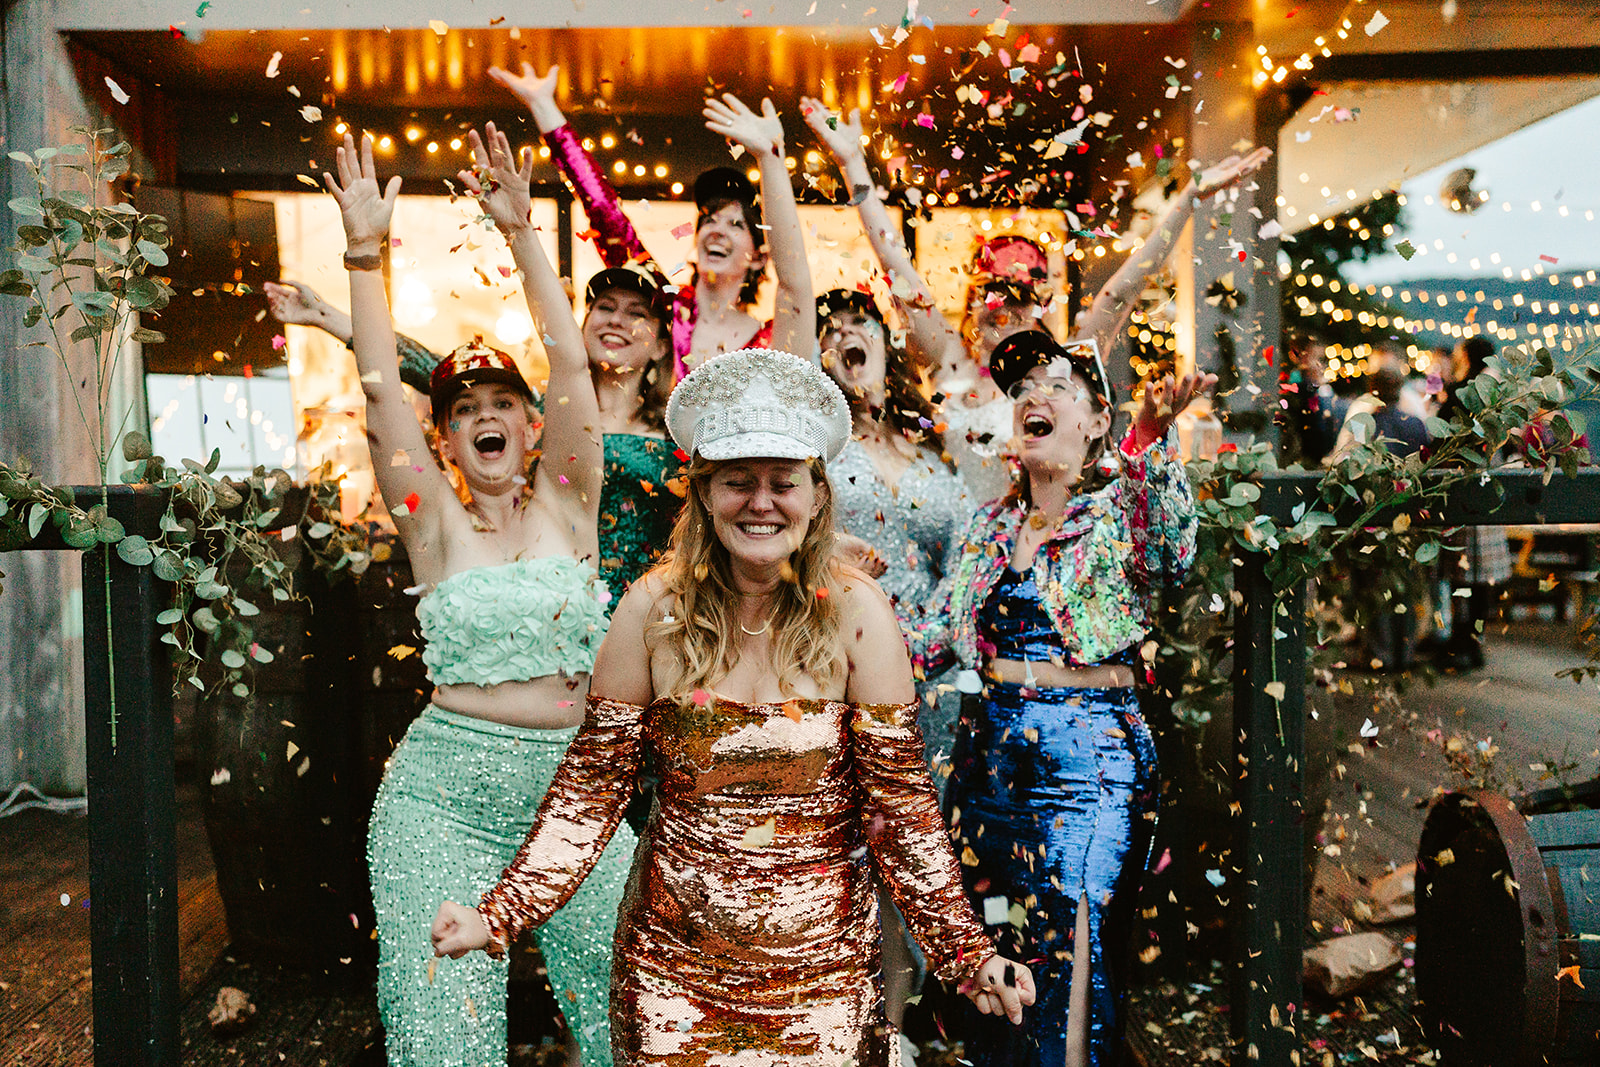 confetti falls on guests at Venachar Lochside wedding venue